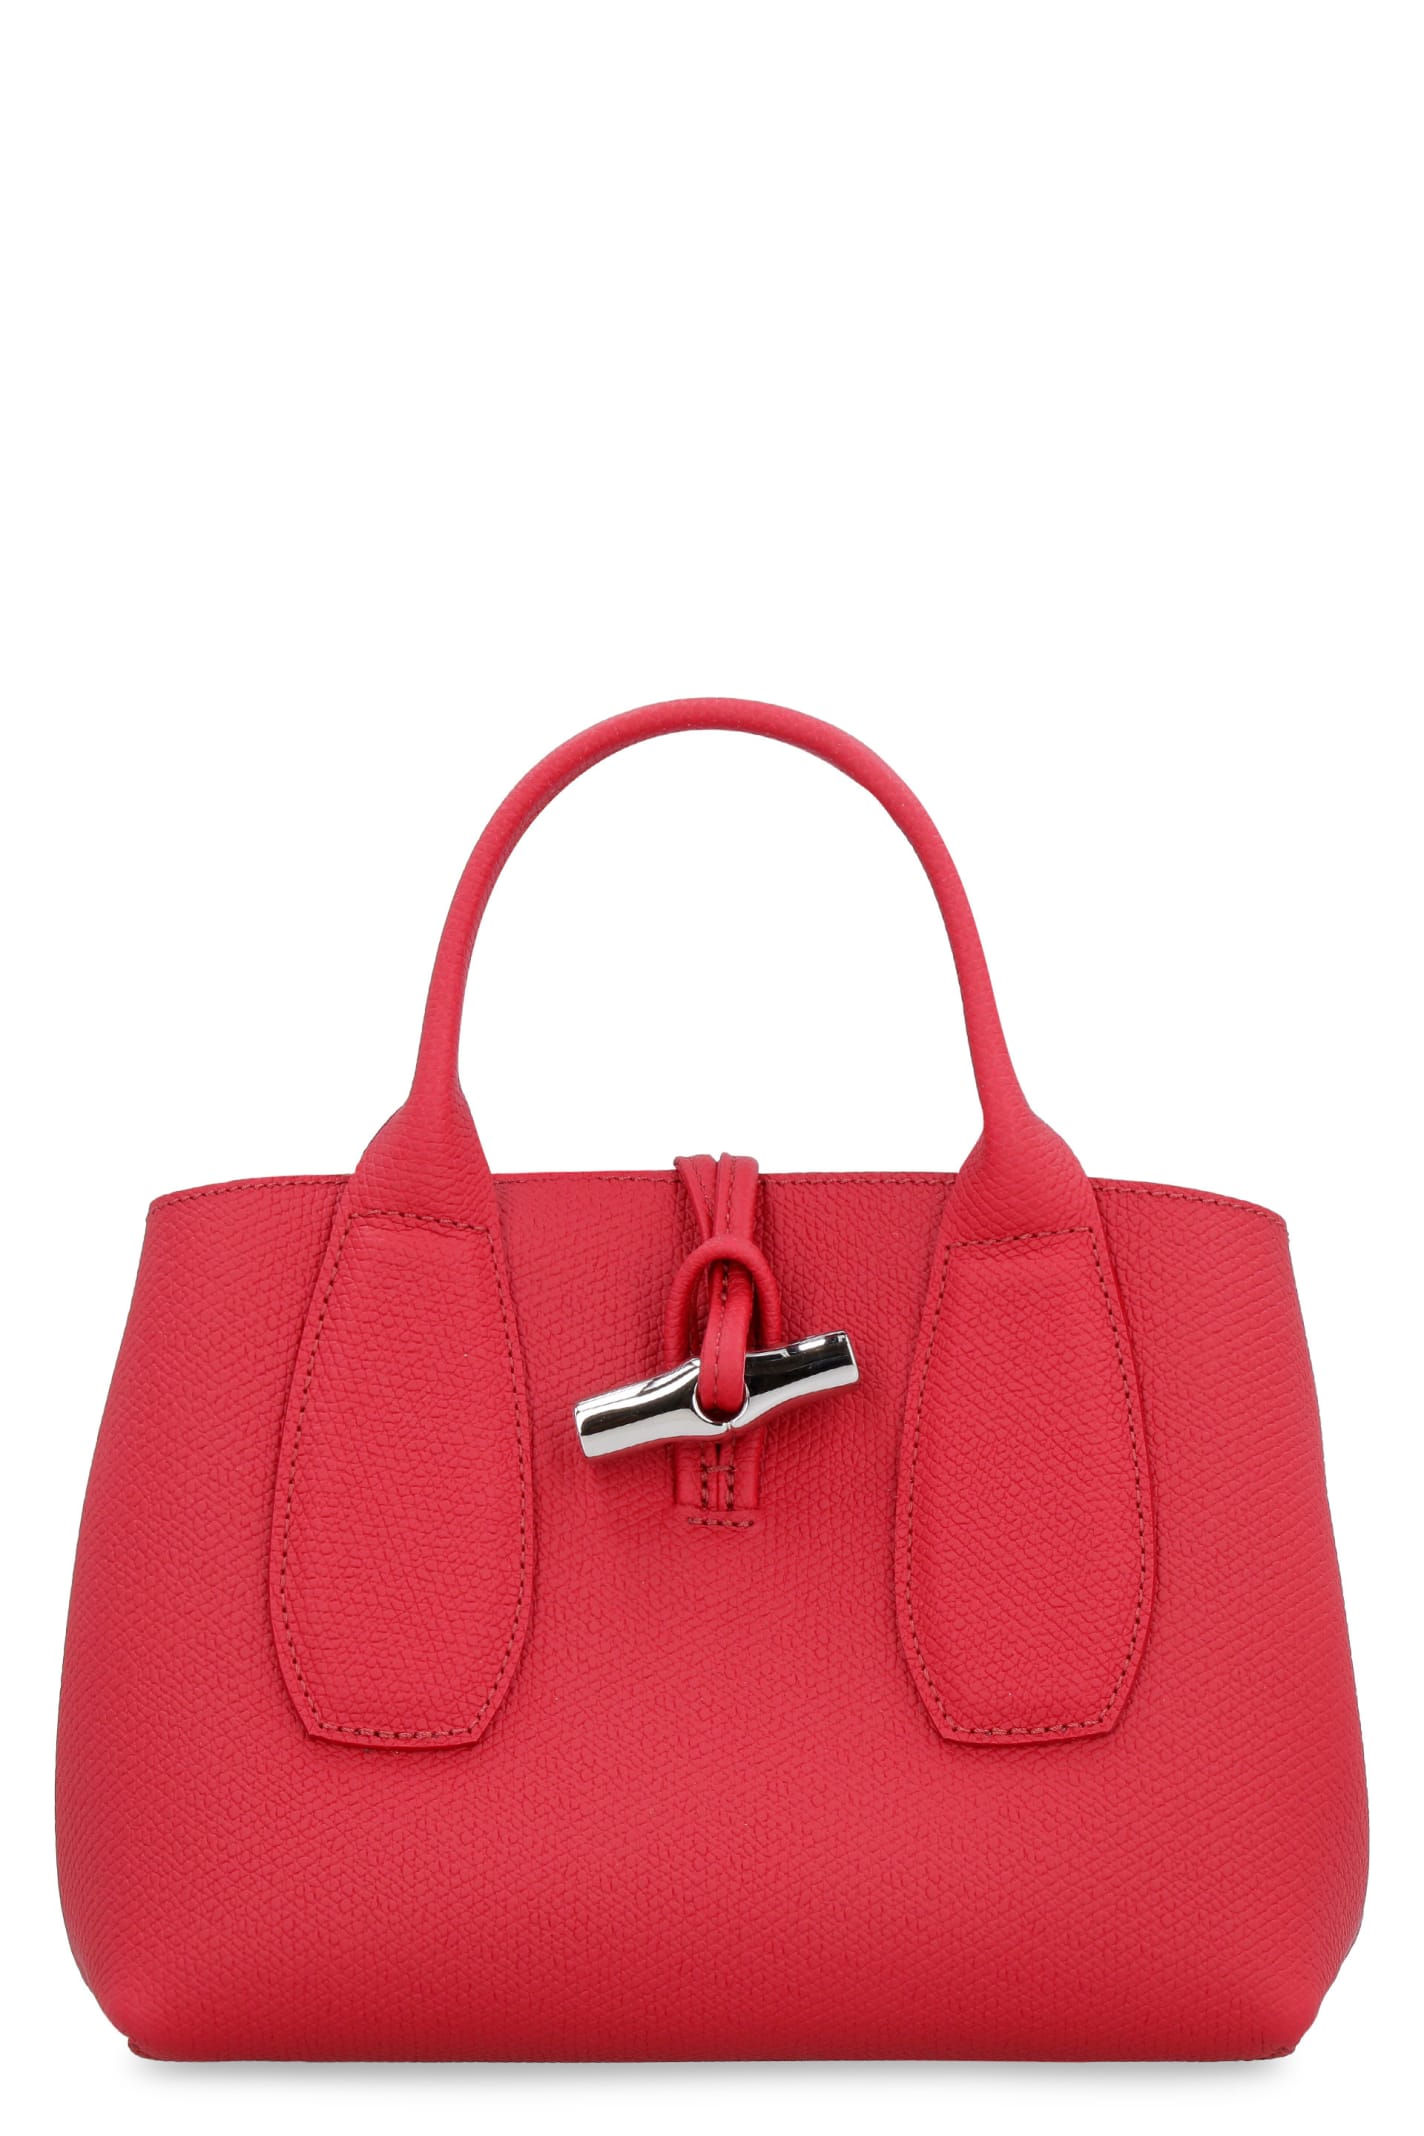 Longchamp Roseau Leather Mini Bag